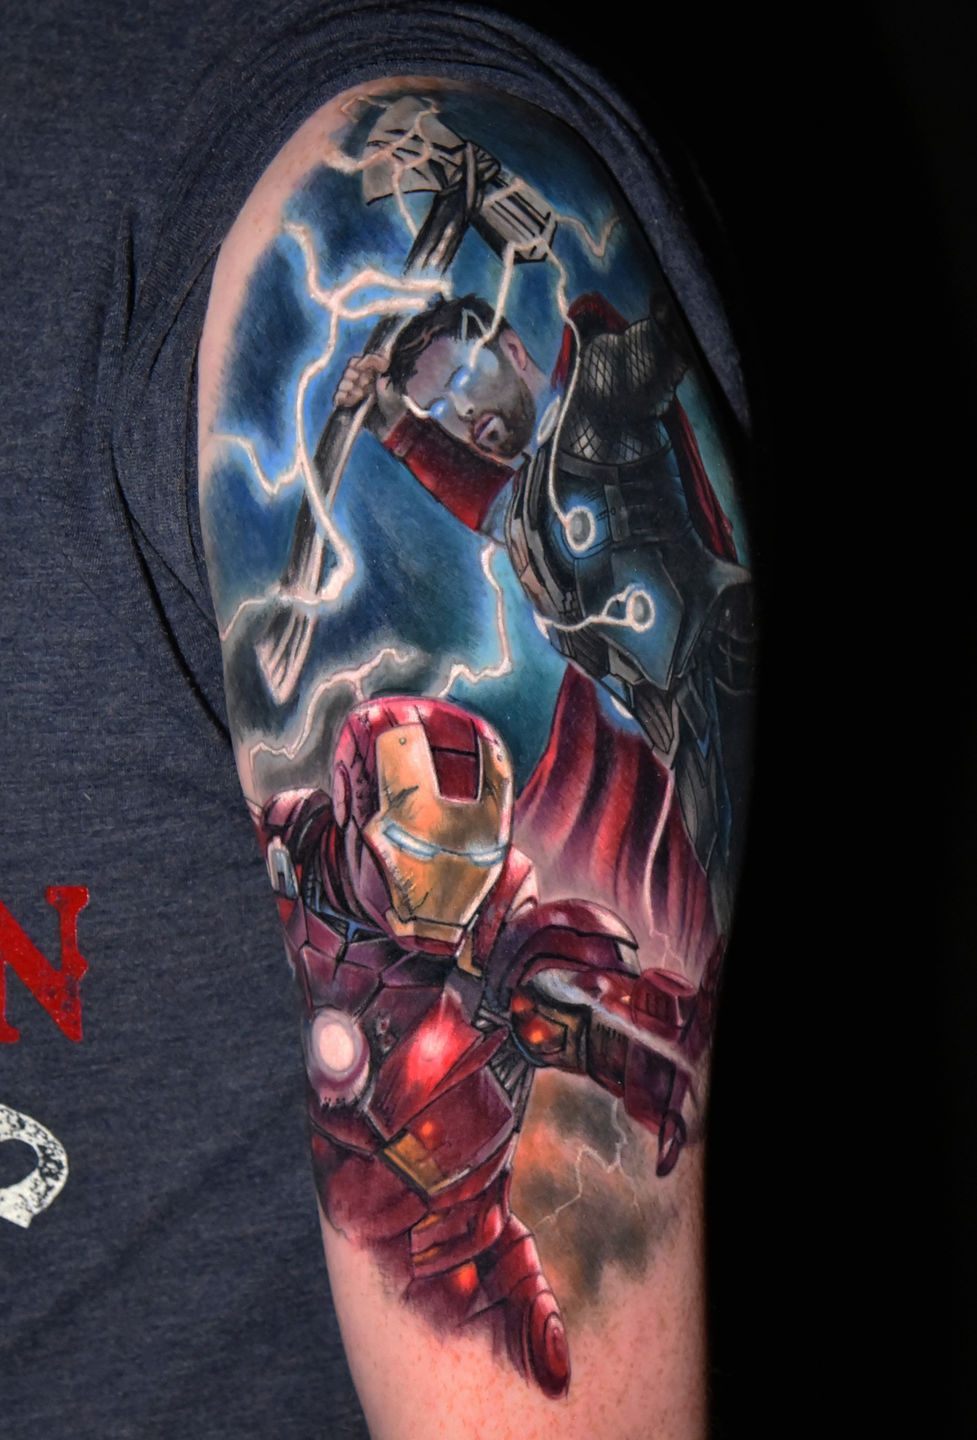 Iron man tattoo by MarioInk on DeviantArt